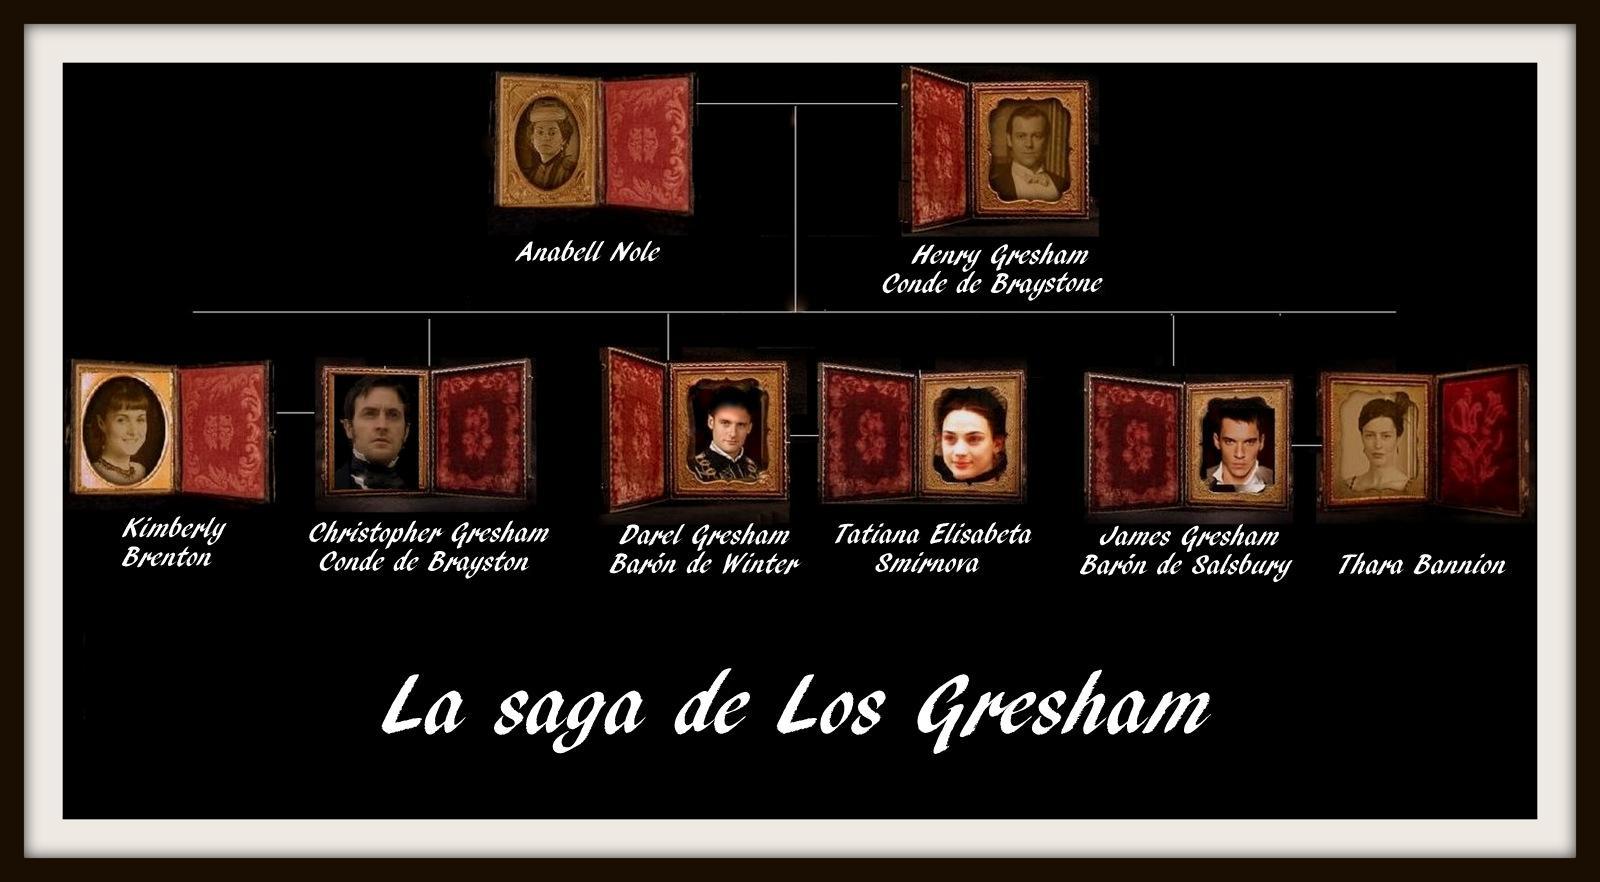 Nieves Hidalgo y La saga de Los Gresham